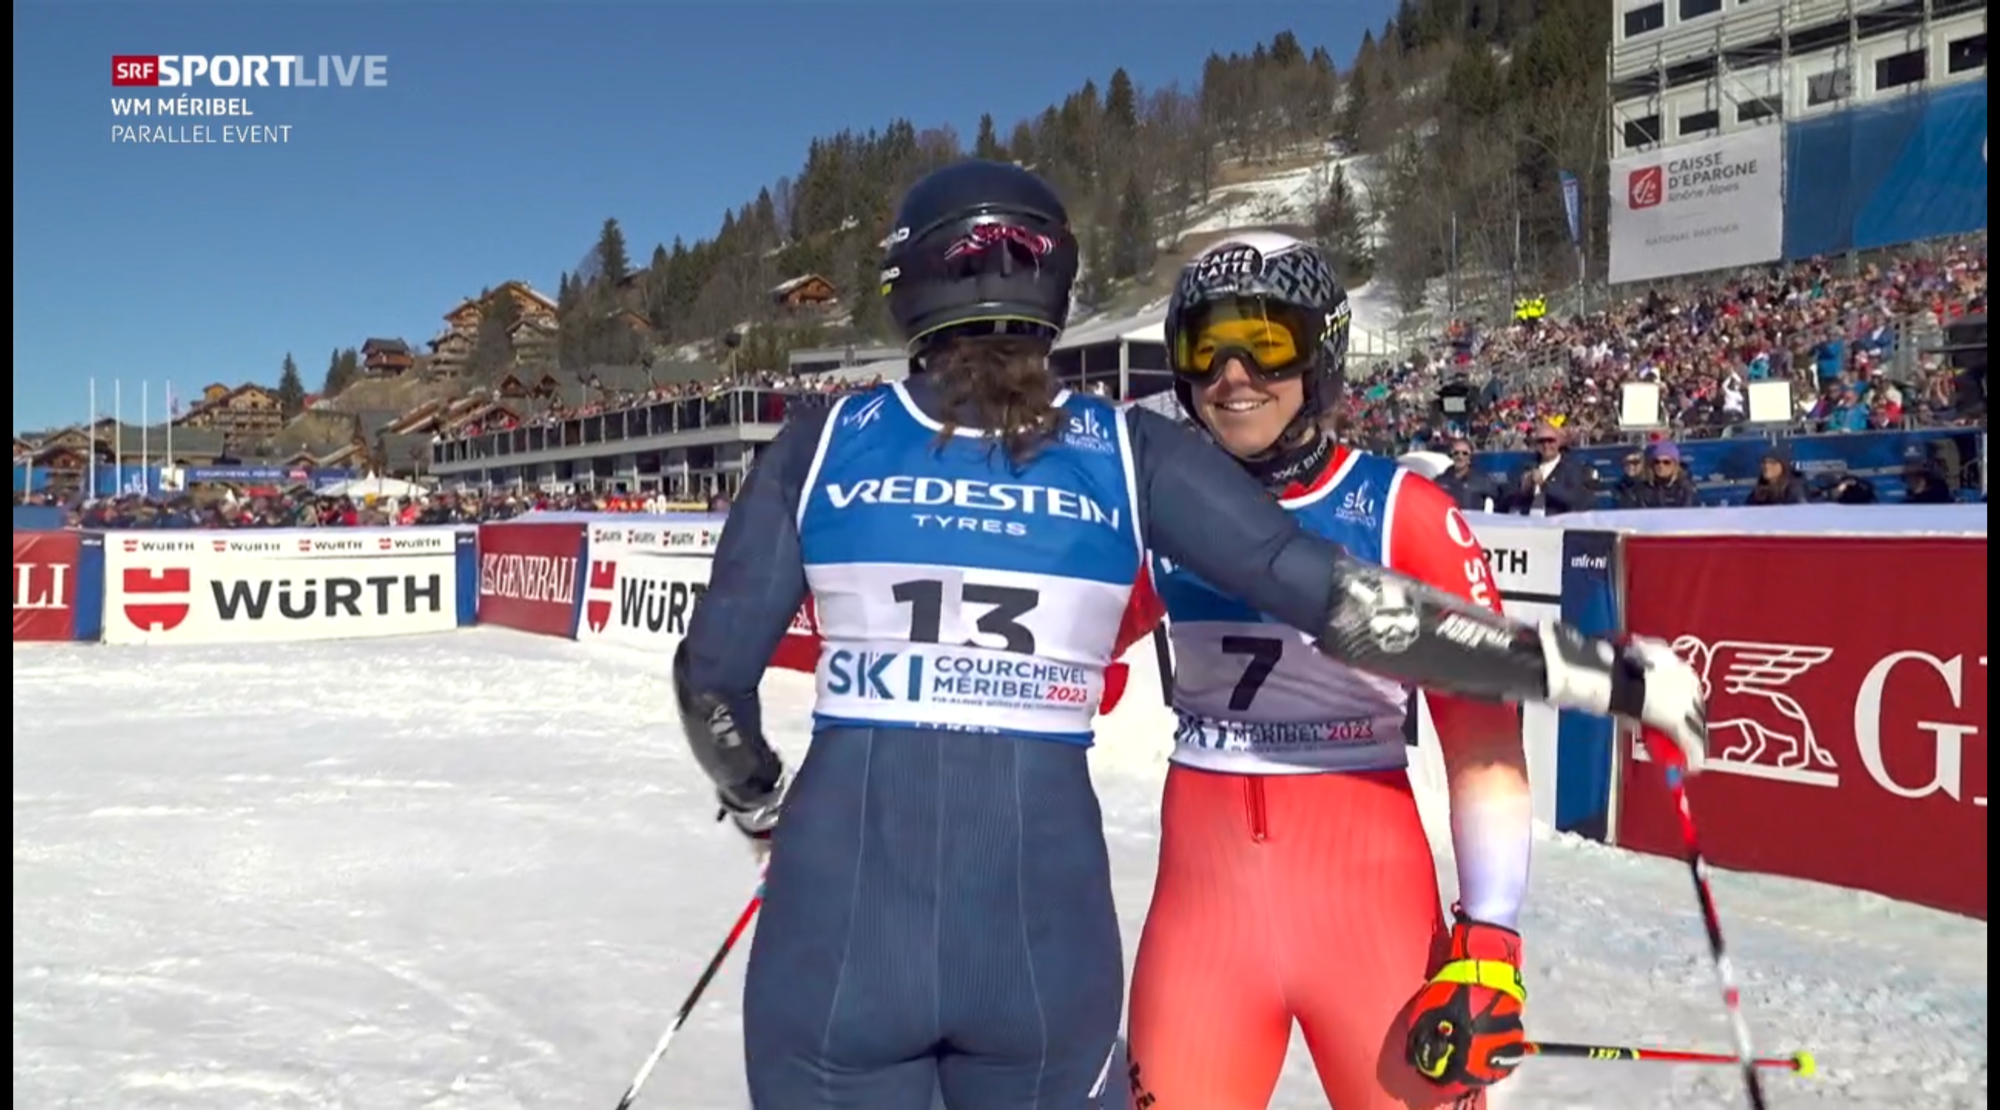 Wendy holt zweite Silbermedaille an der Ski-WM in Méribel